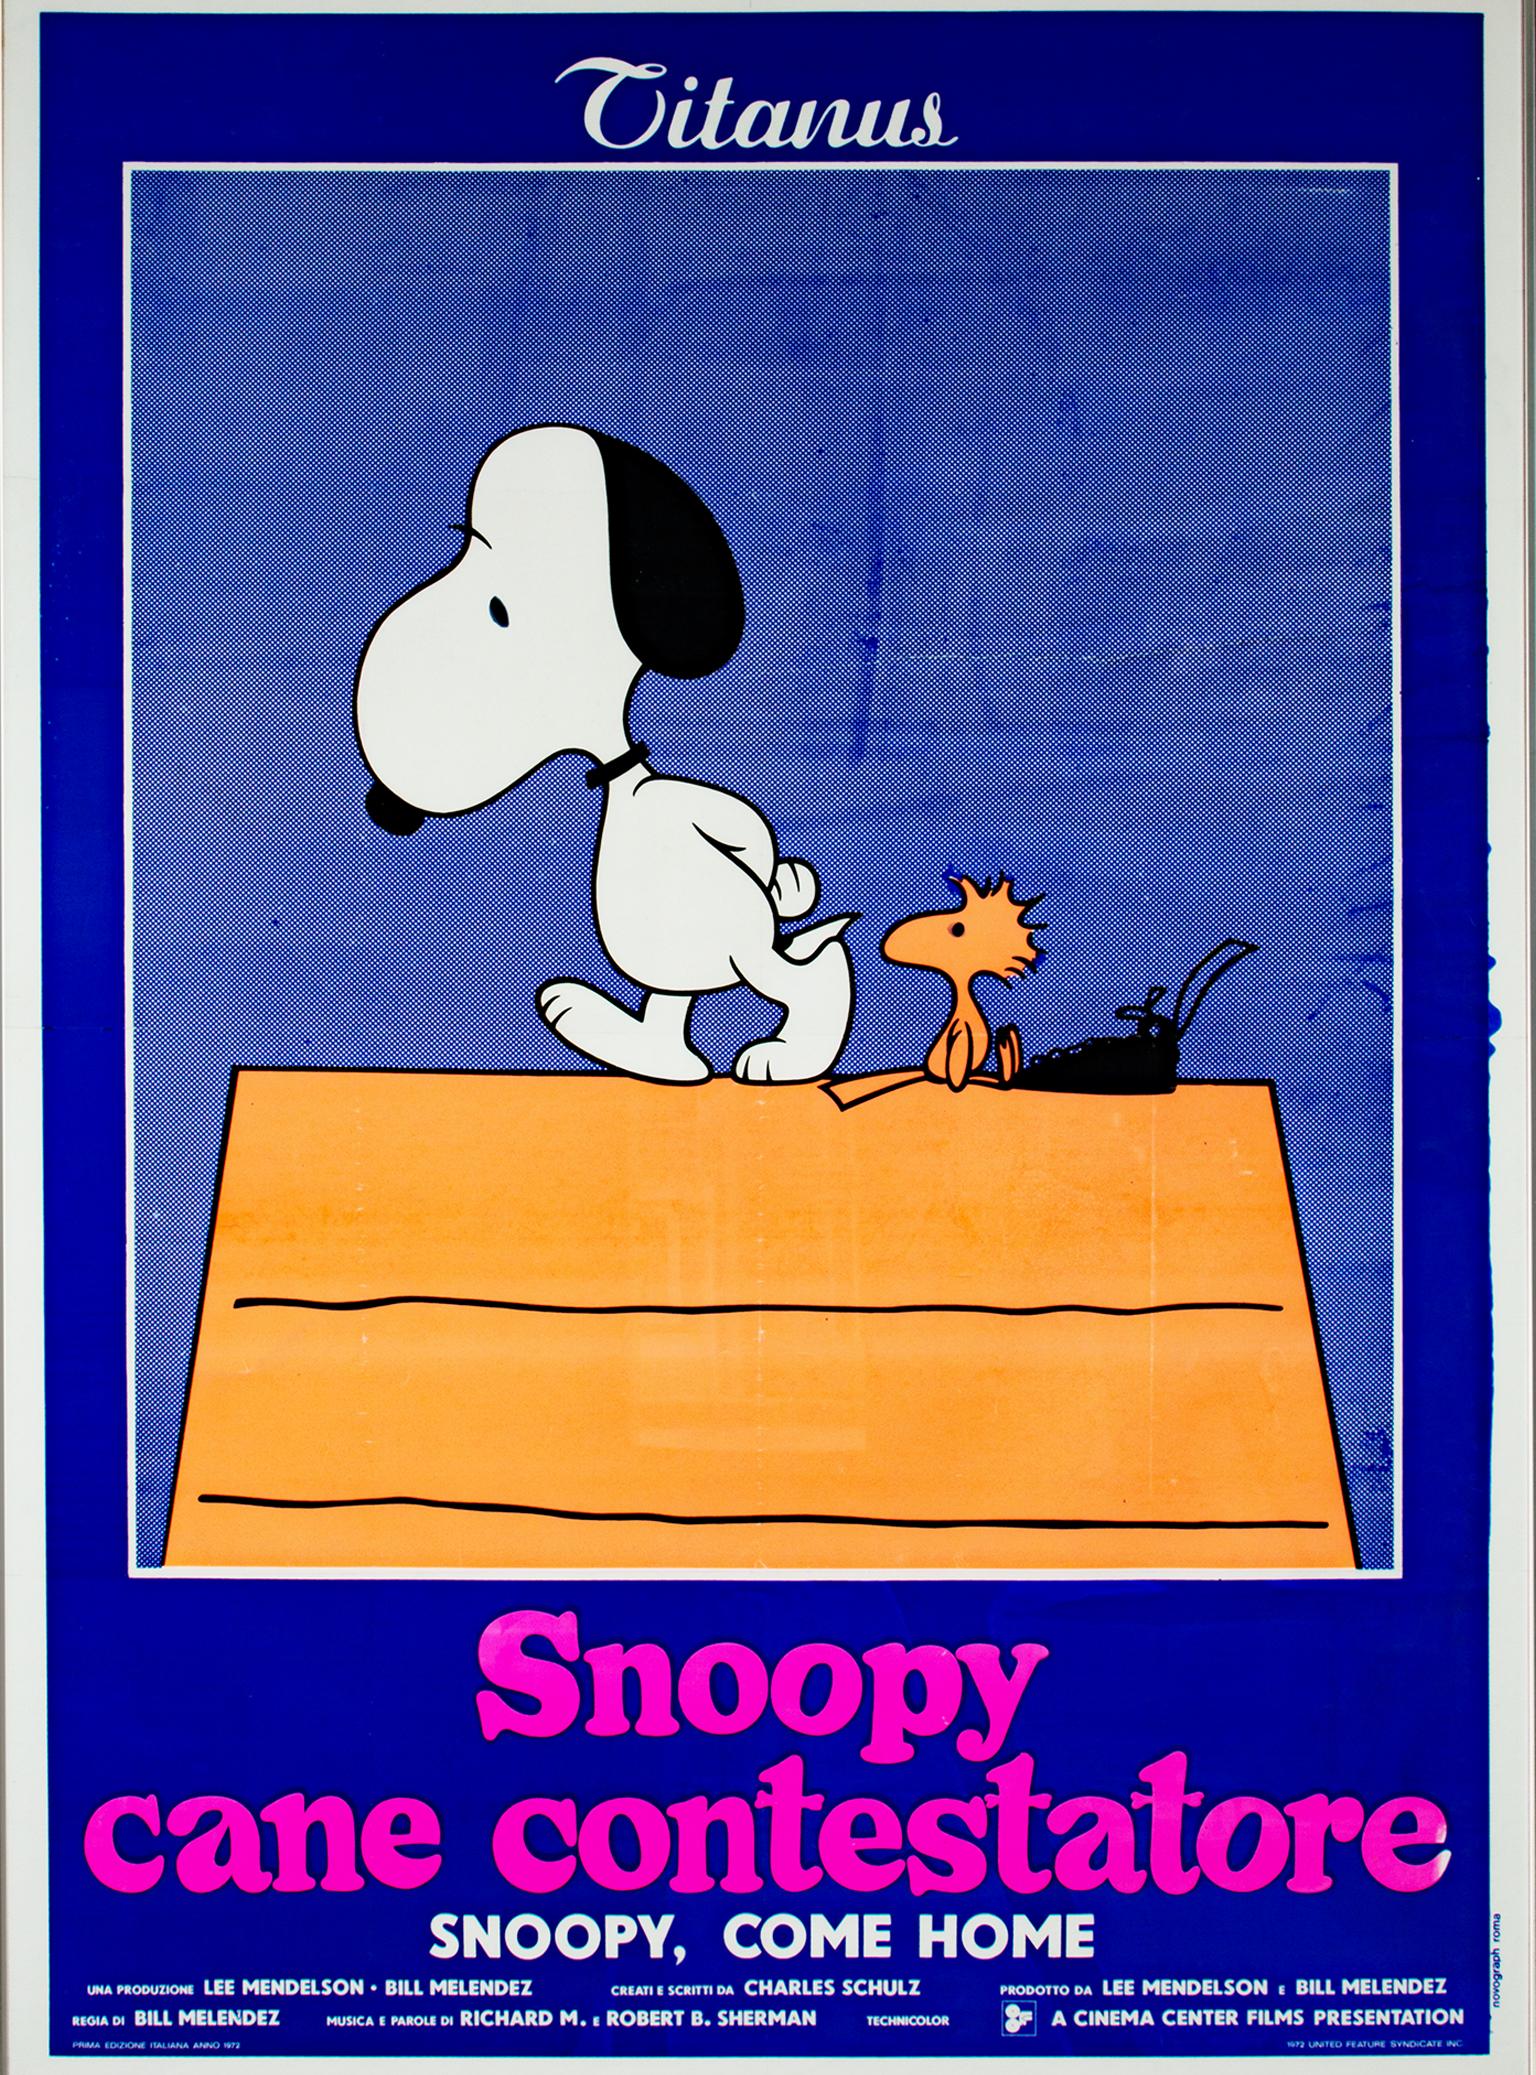 "Snoopy Come Home" est une affiche lithographique originale de Charles Schulz. Il représente les personnages populaires des Peanuts, Snoopy et Woodstock, au sommet de la maison de Snoopy. La scène est dominée par un bleu profond, et le texte en